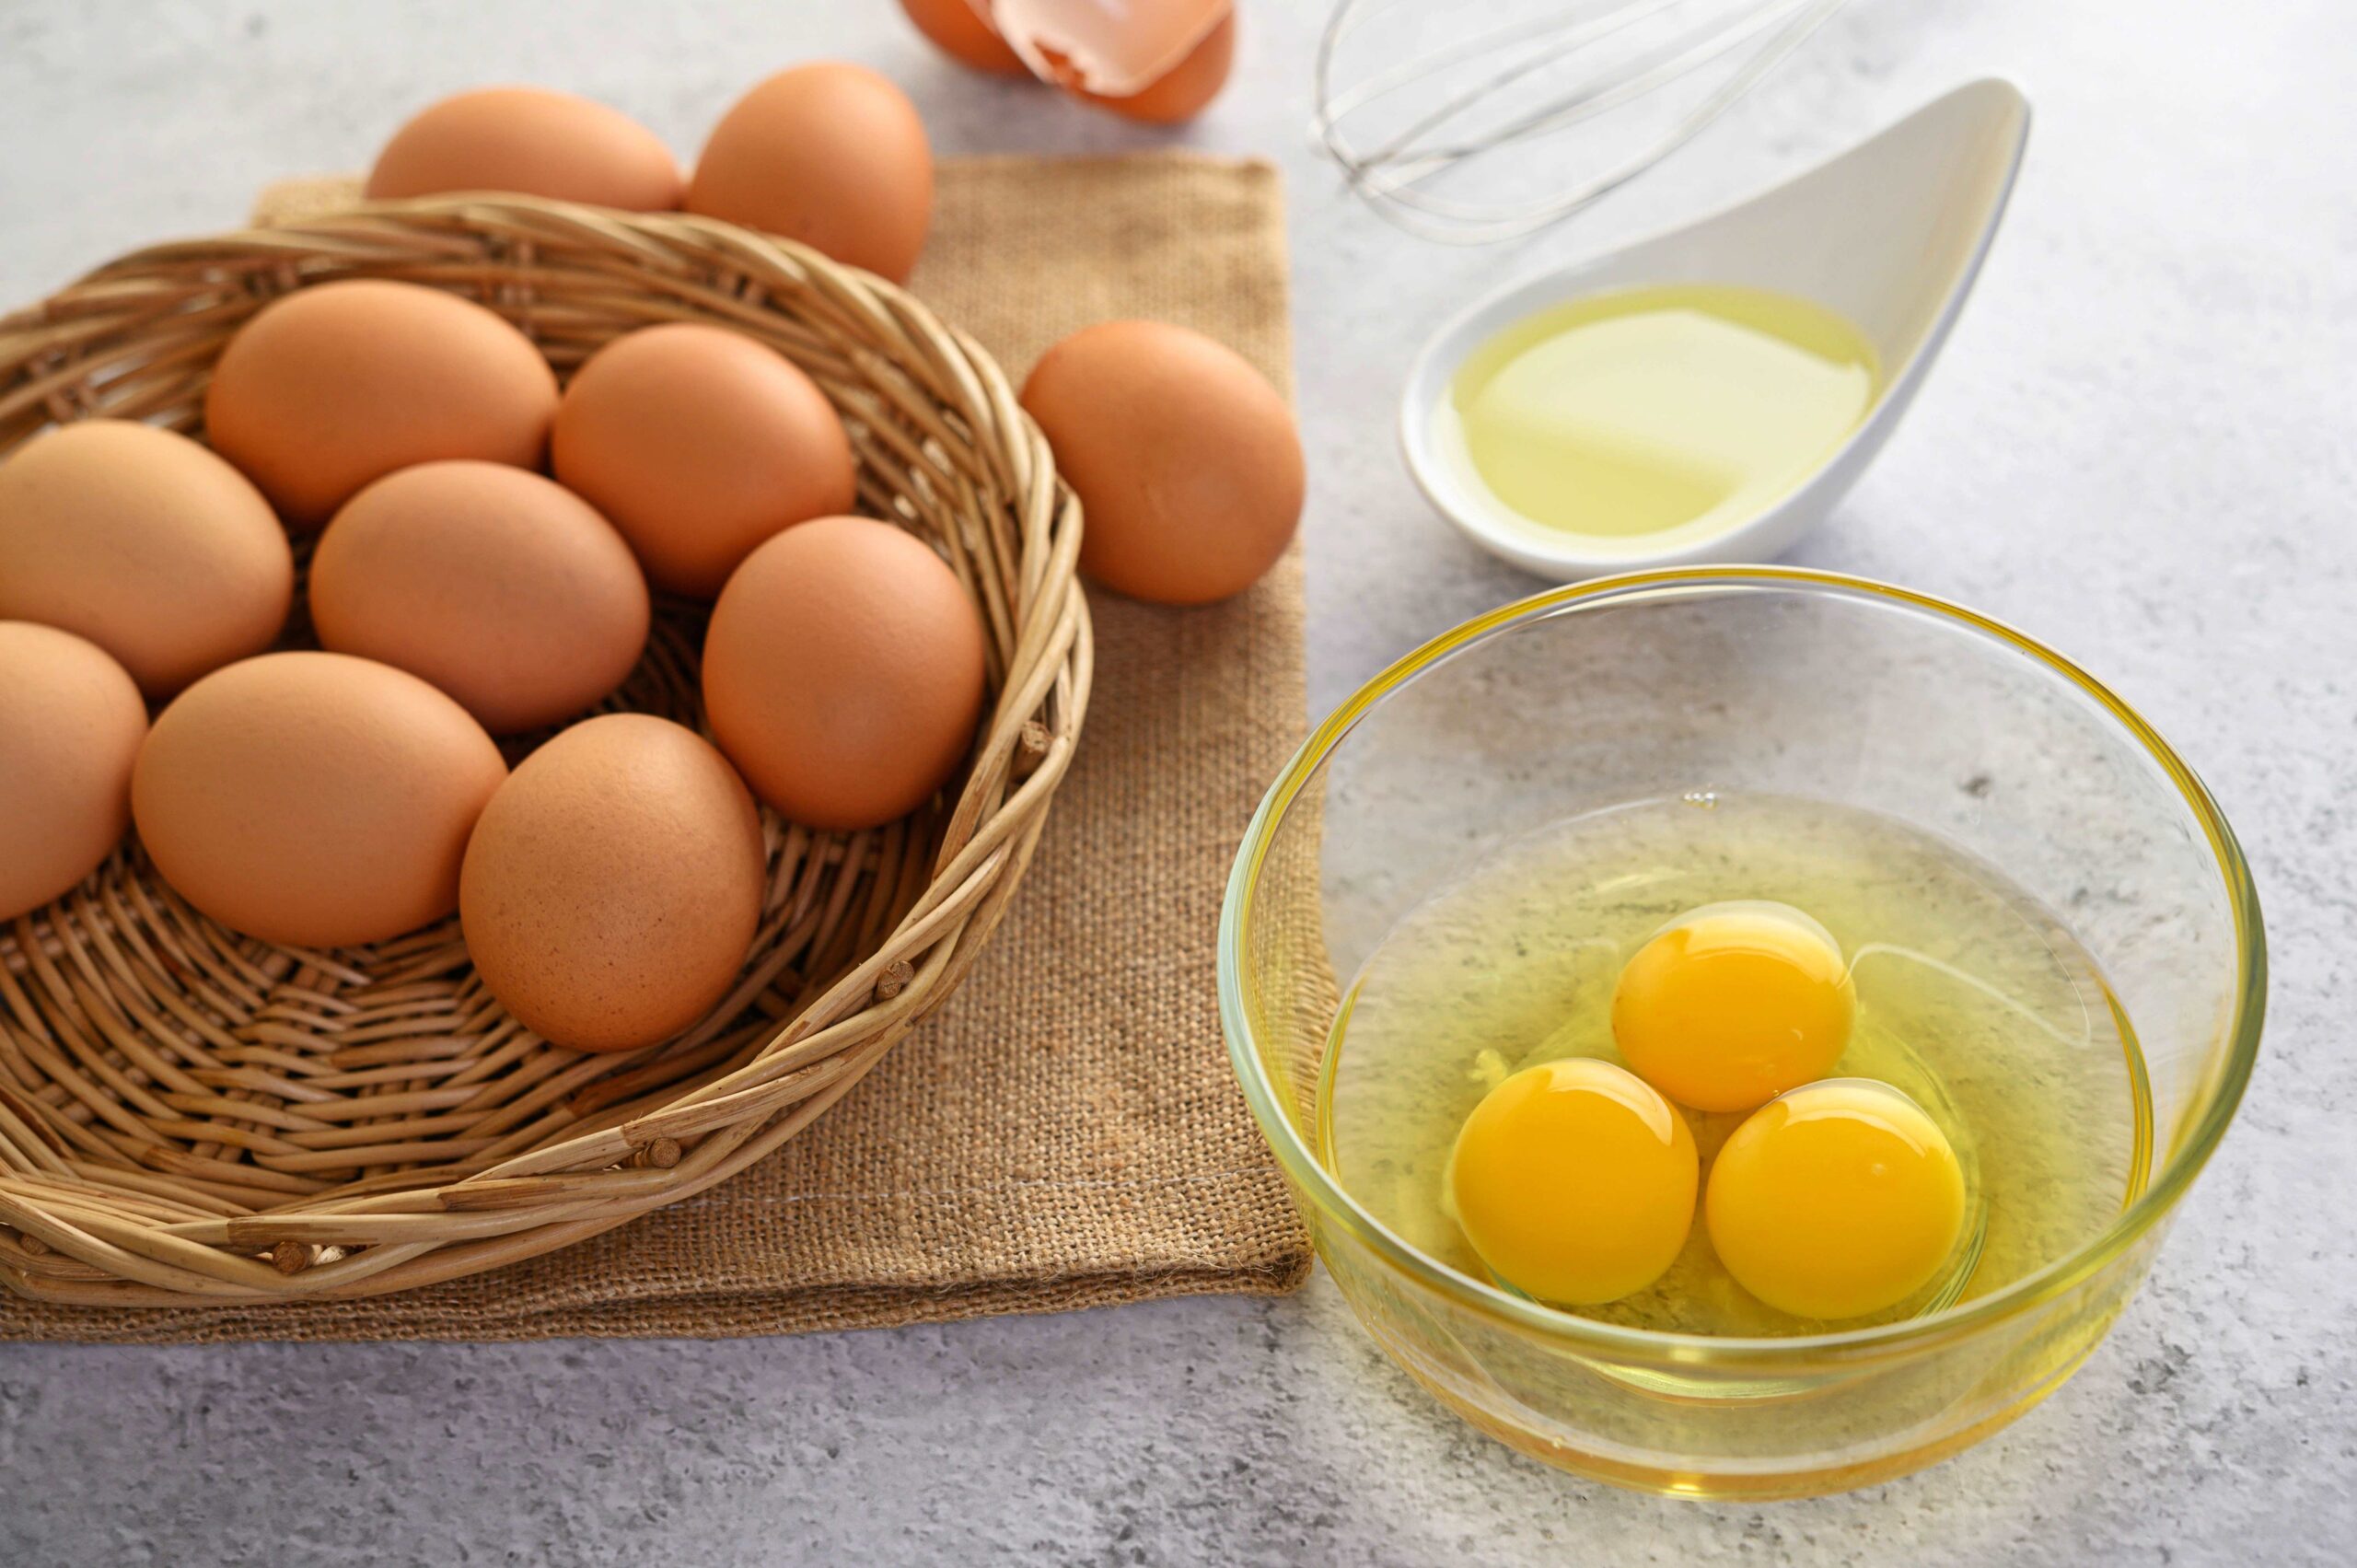 ผลงานวิจัยใหม่พบ “ไข่” ลดความเสี่ยงกระดูกพรุน